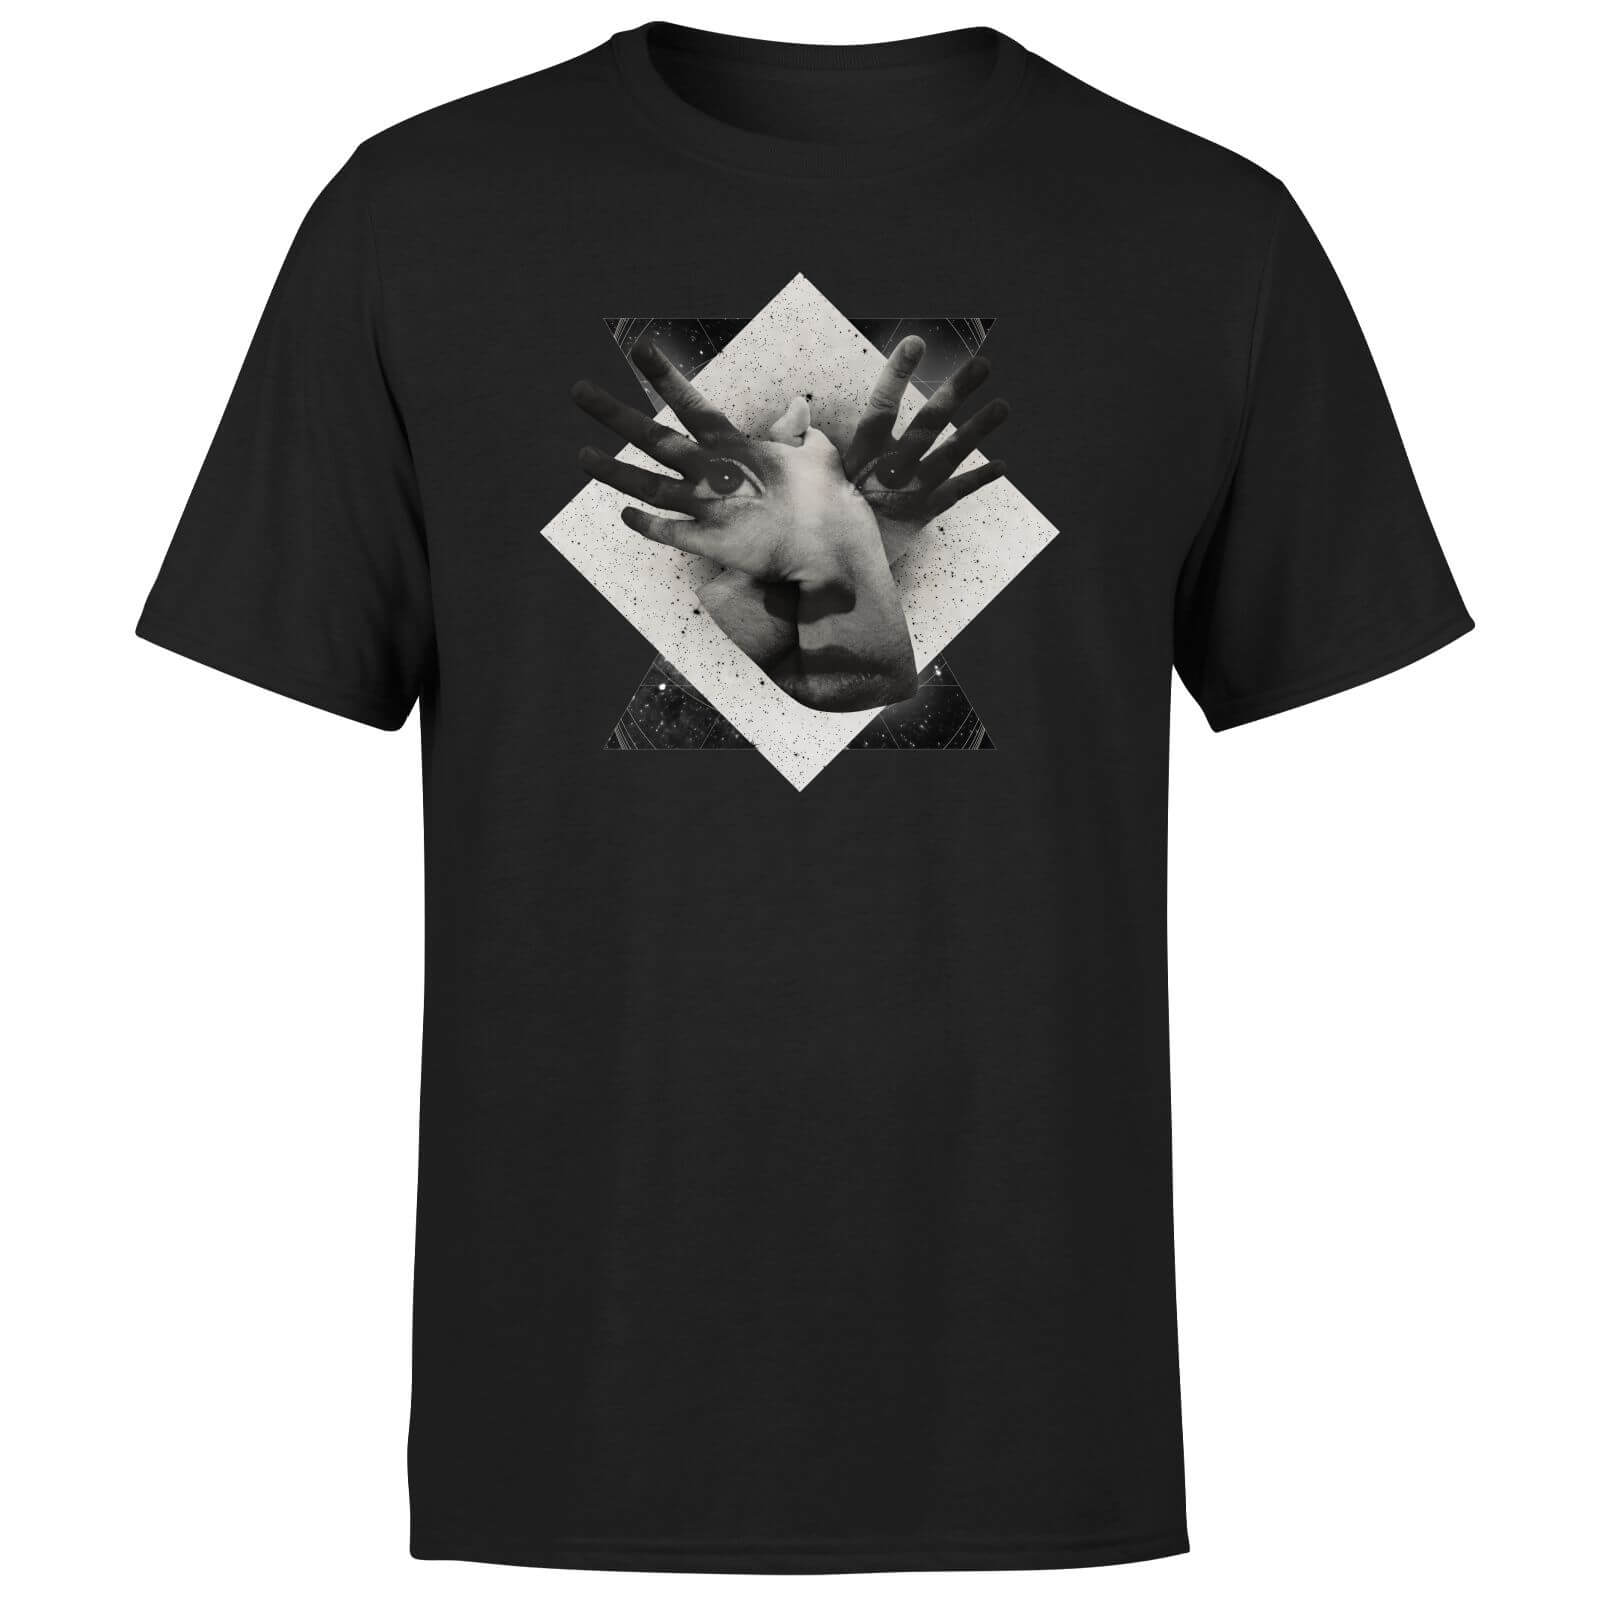 Ikiiki Mask Men's T-Shirt - Black - XS - Black